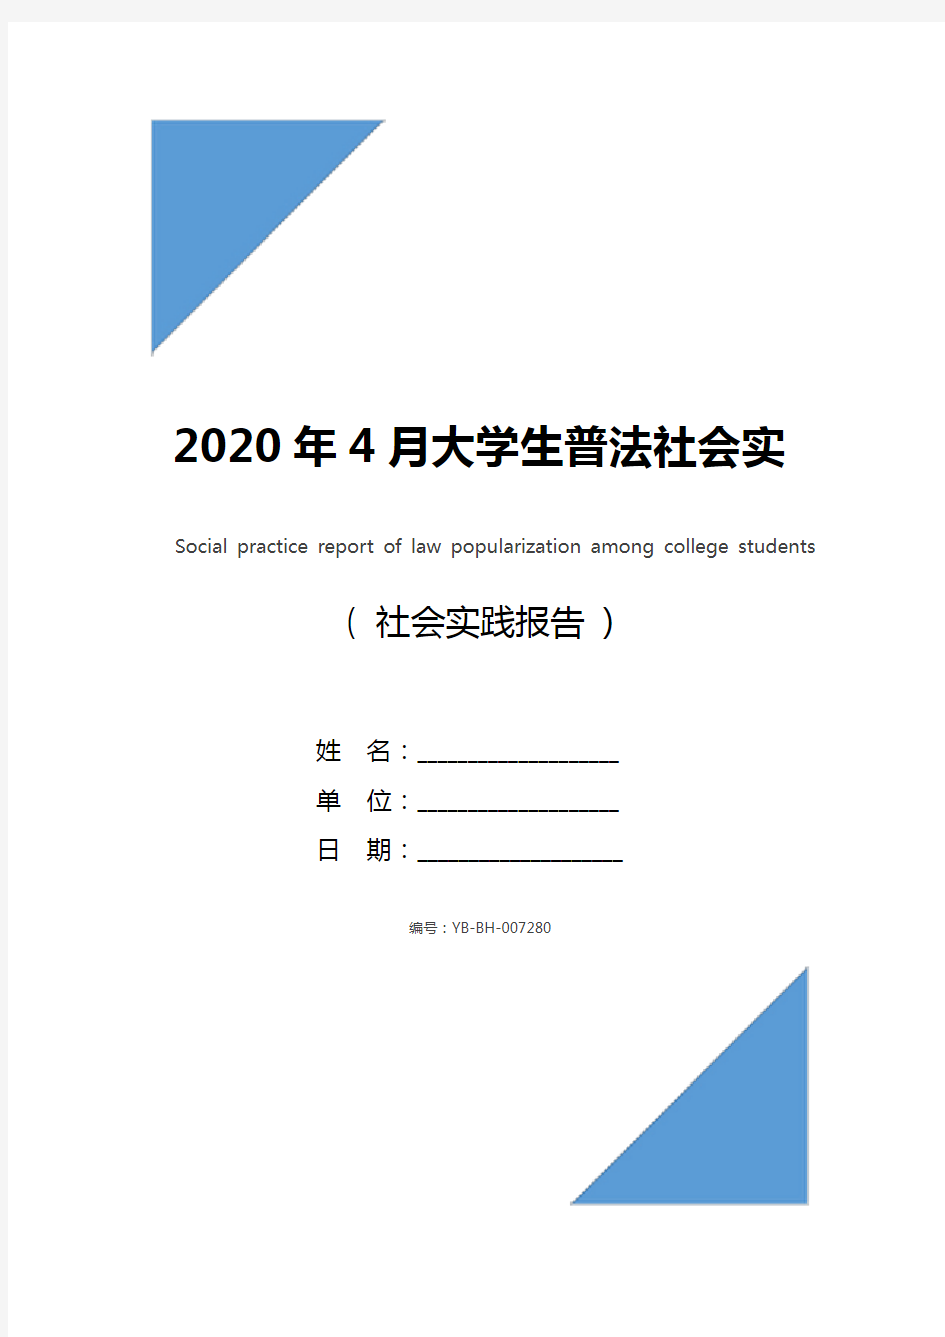 2020年4月大学生普法社会实践报告_1